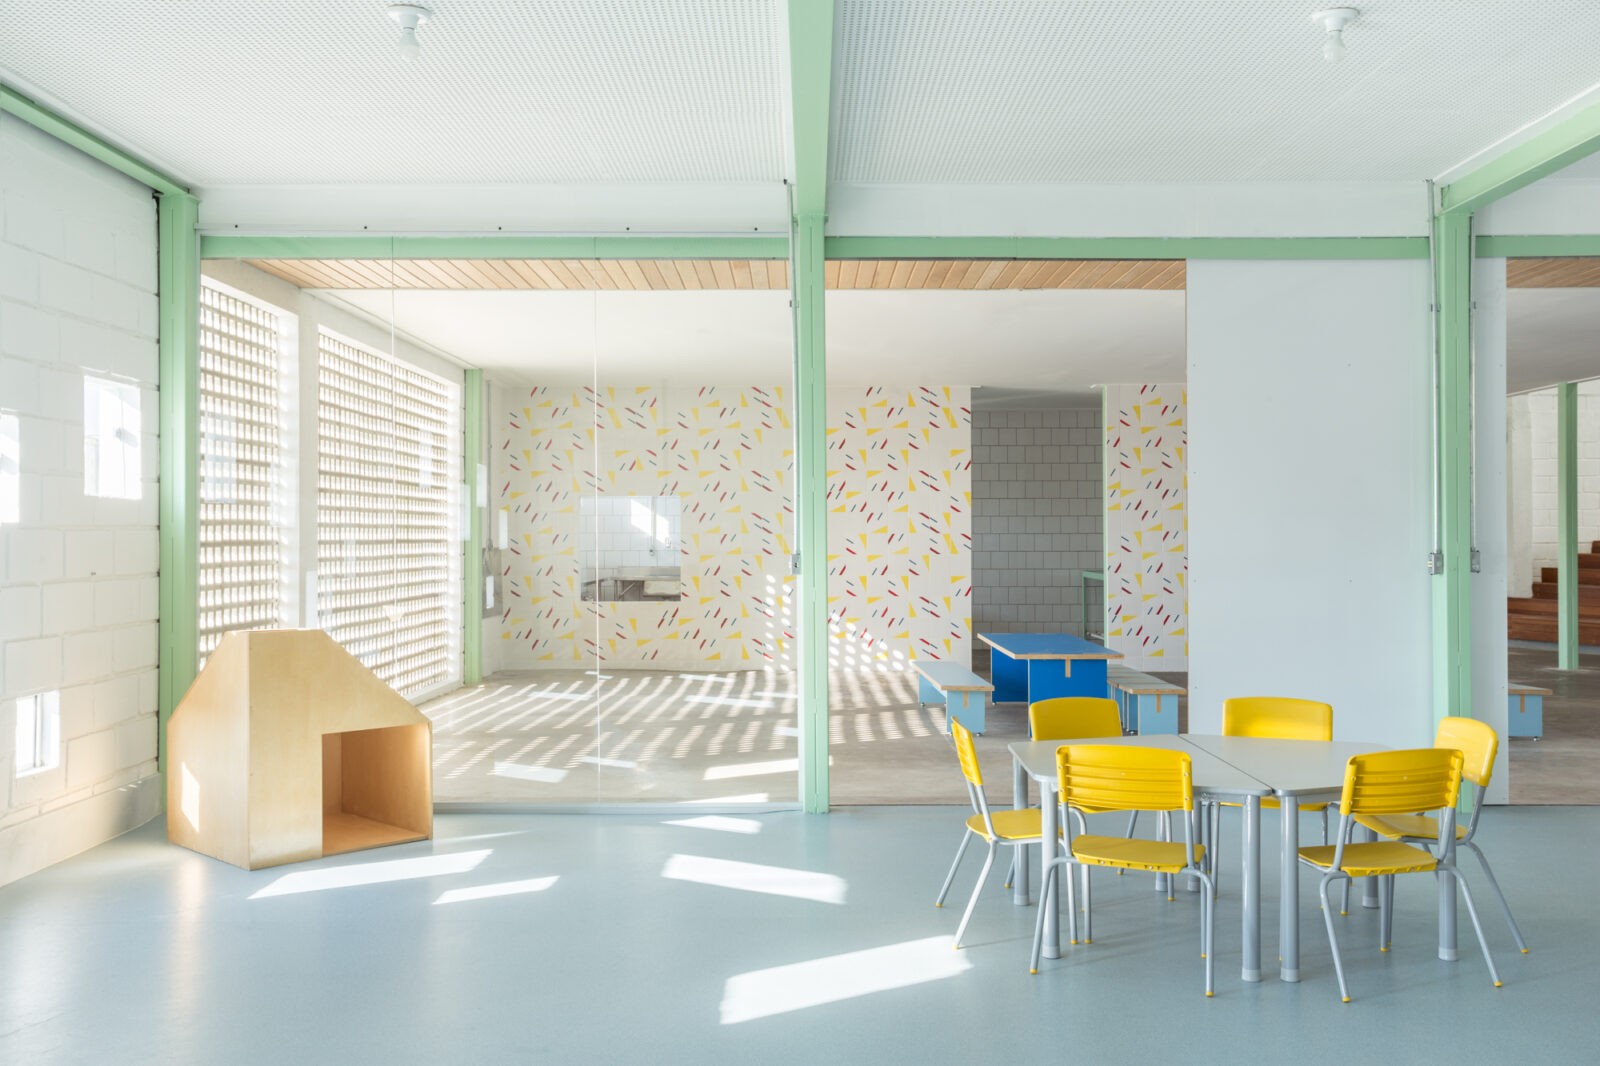 Escola infantil casa fundamental projeto arquitetônico arquitetura escolar Gabriel Castro Belo horizonte